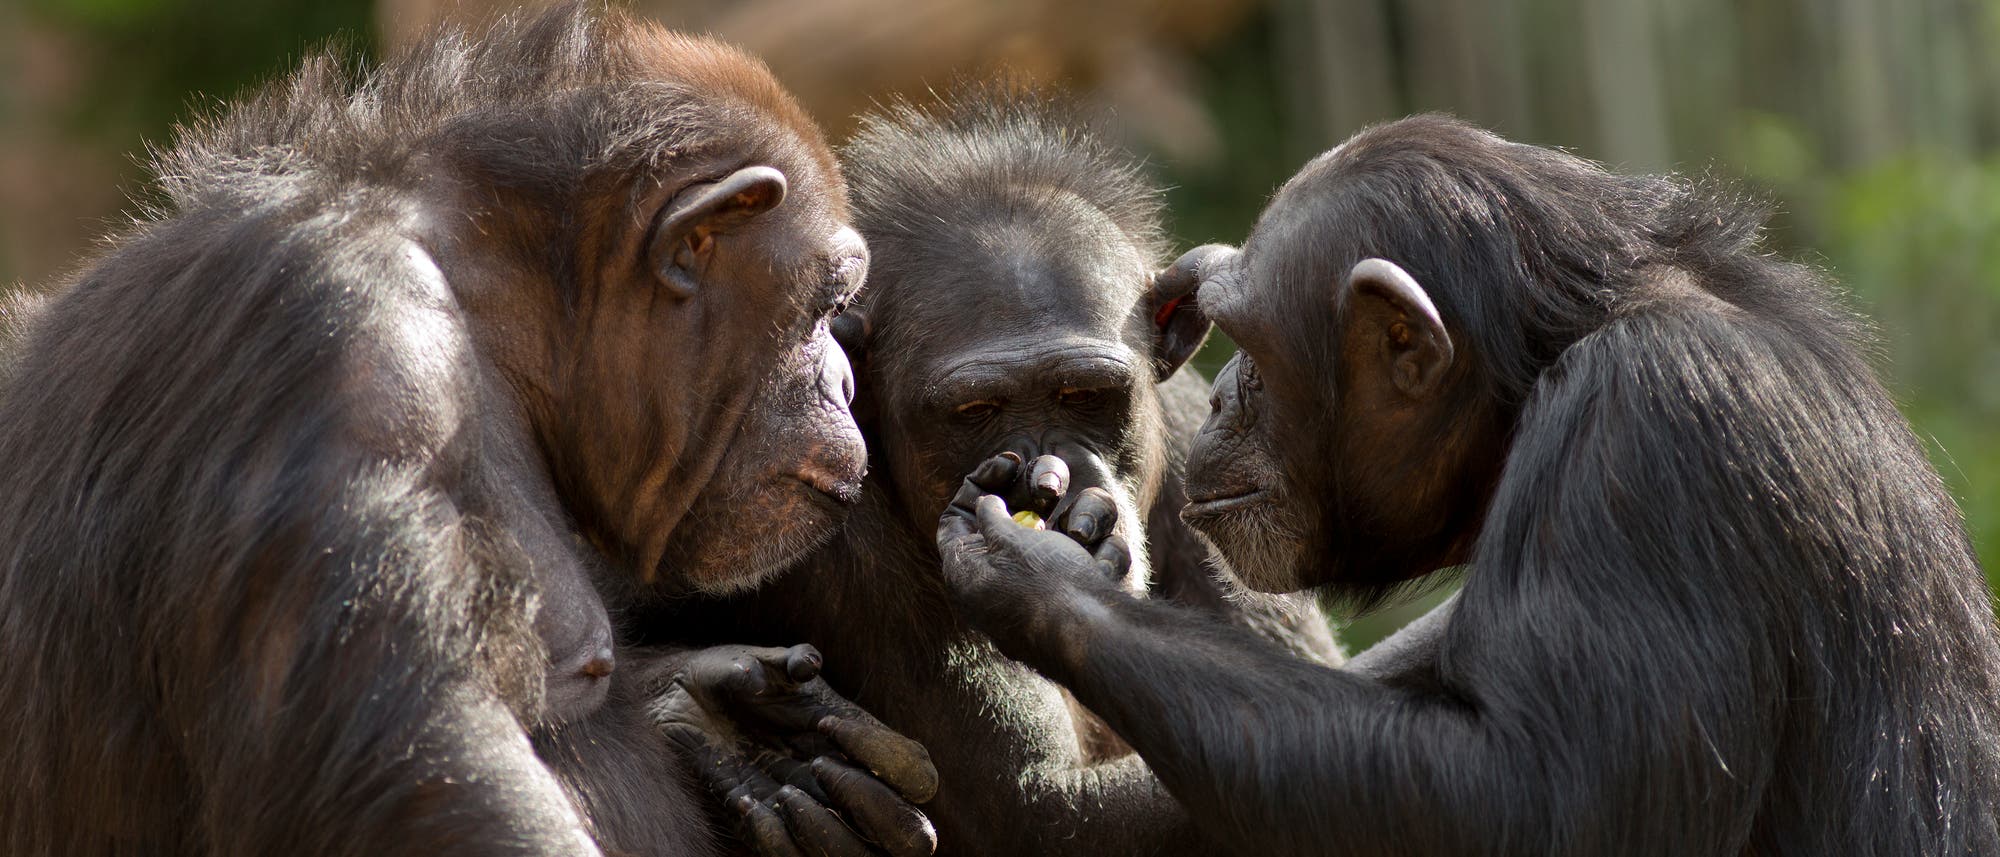 Drei Schimpansen stehen in einer Gruppe zusammen und schauen auf einen Gegenstand in der Hand des einen Affen.